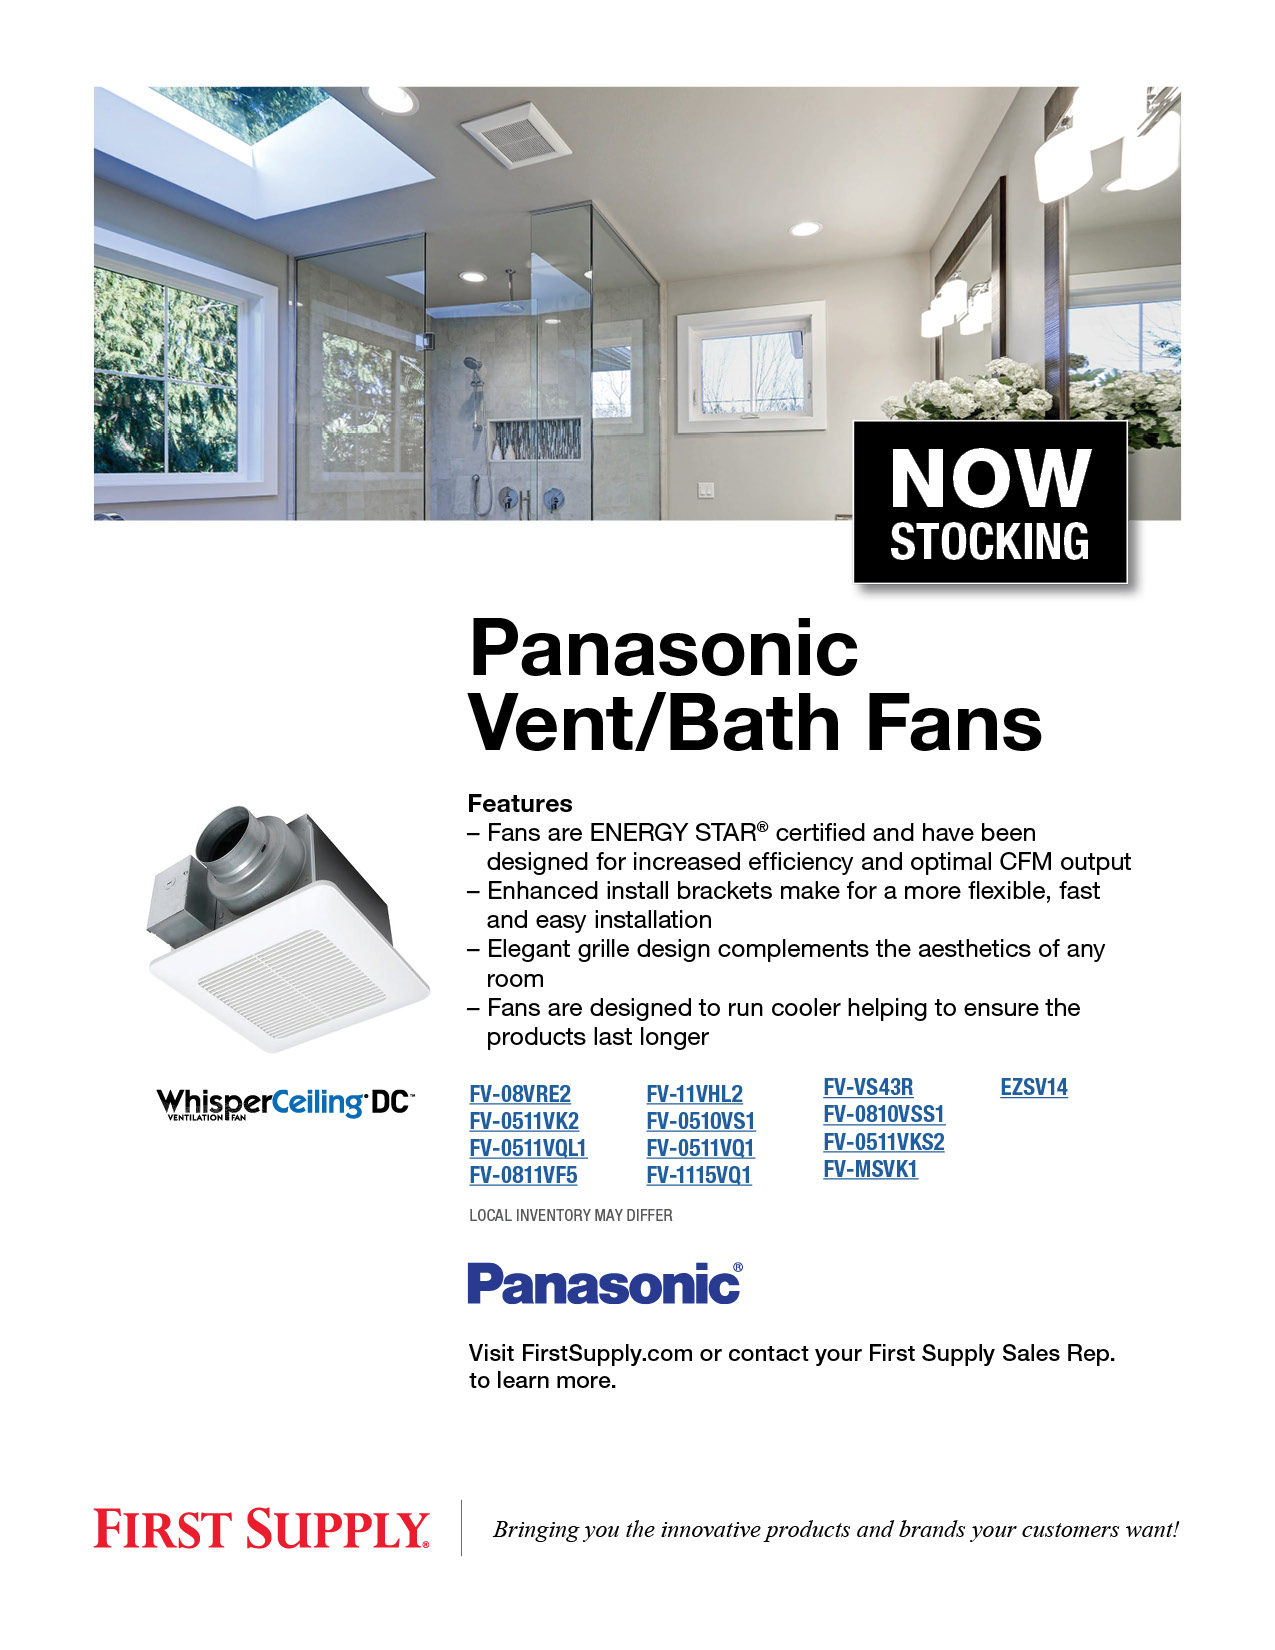 Panasonic Vent/Bath Fans